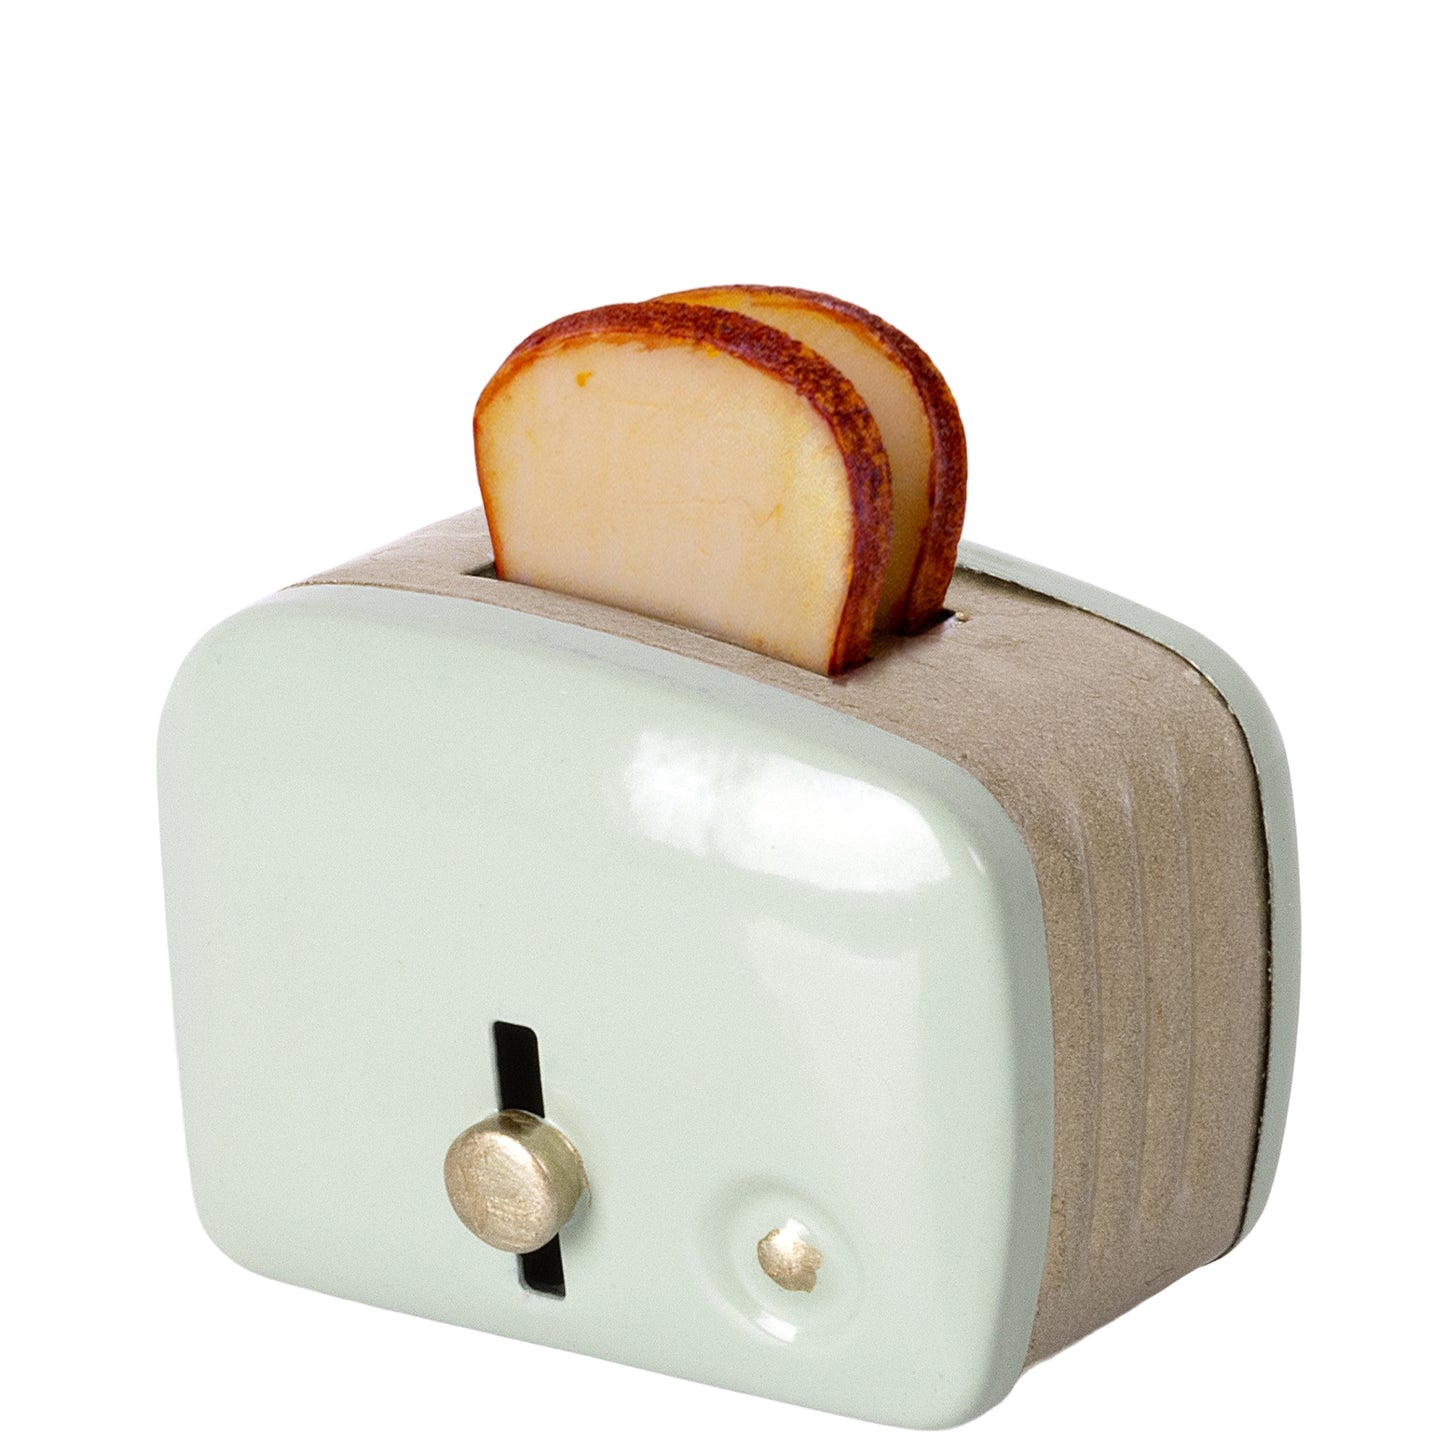 Miniatur-Toaster, mint, Maileg